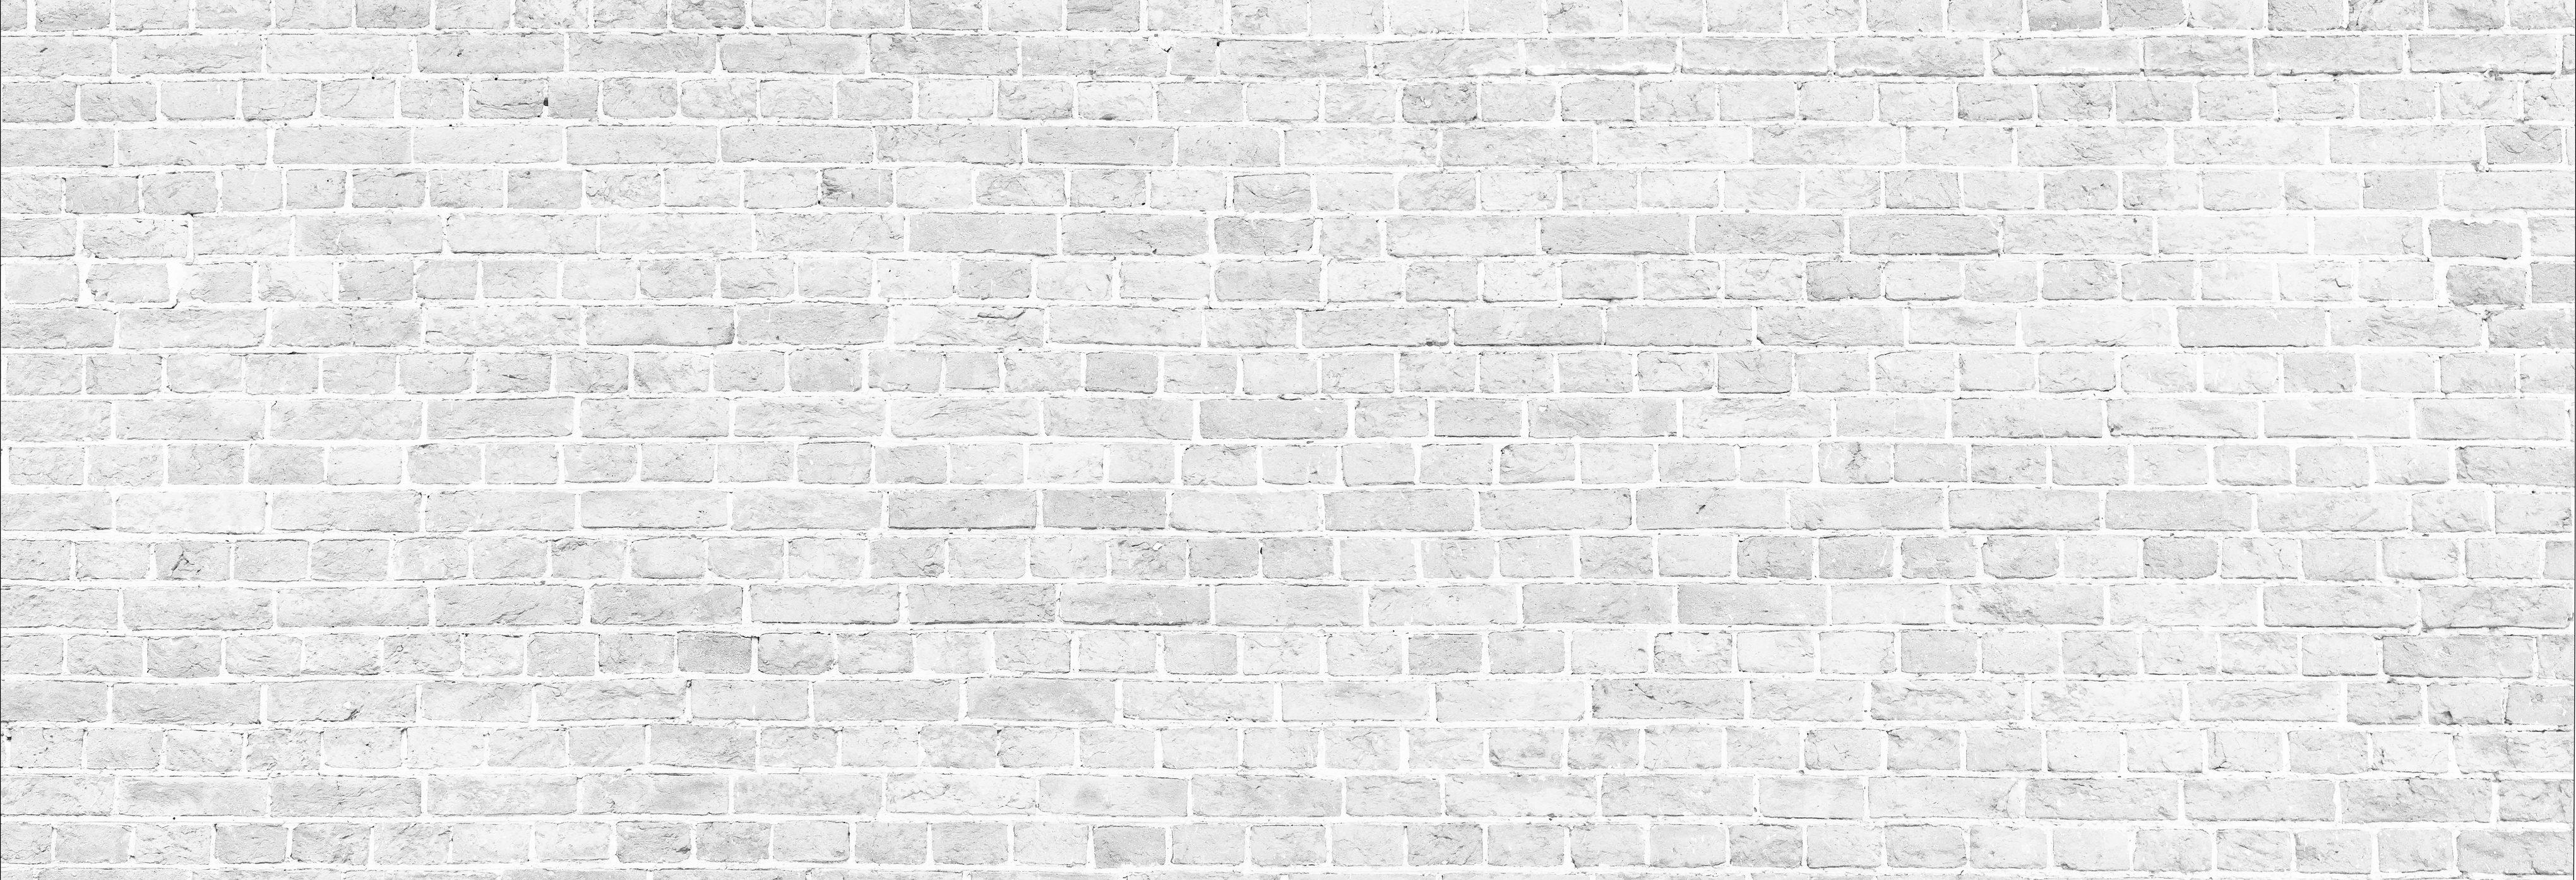 White wash brick wall panorama.